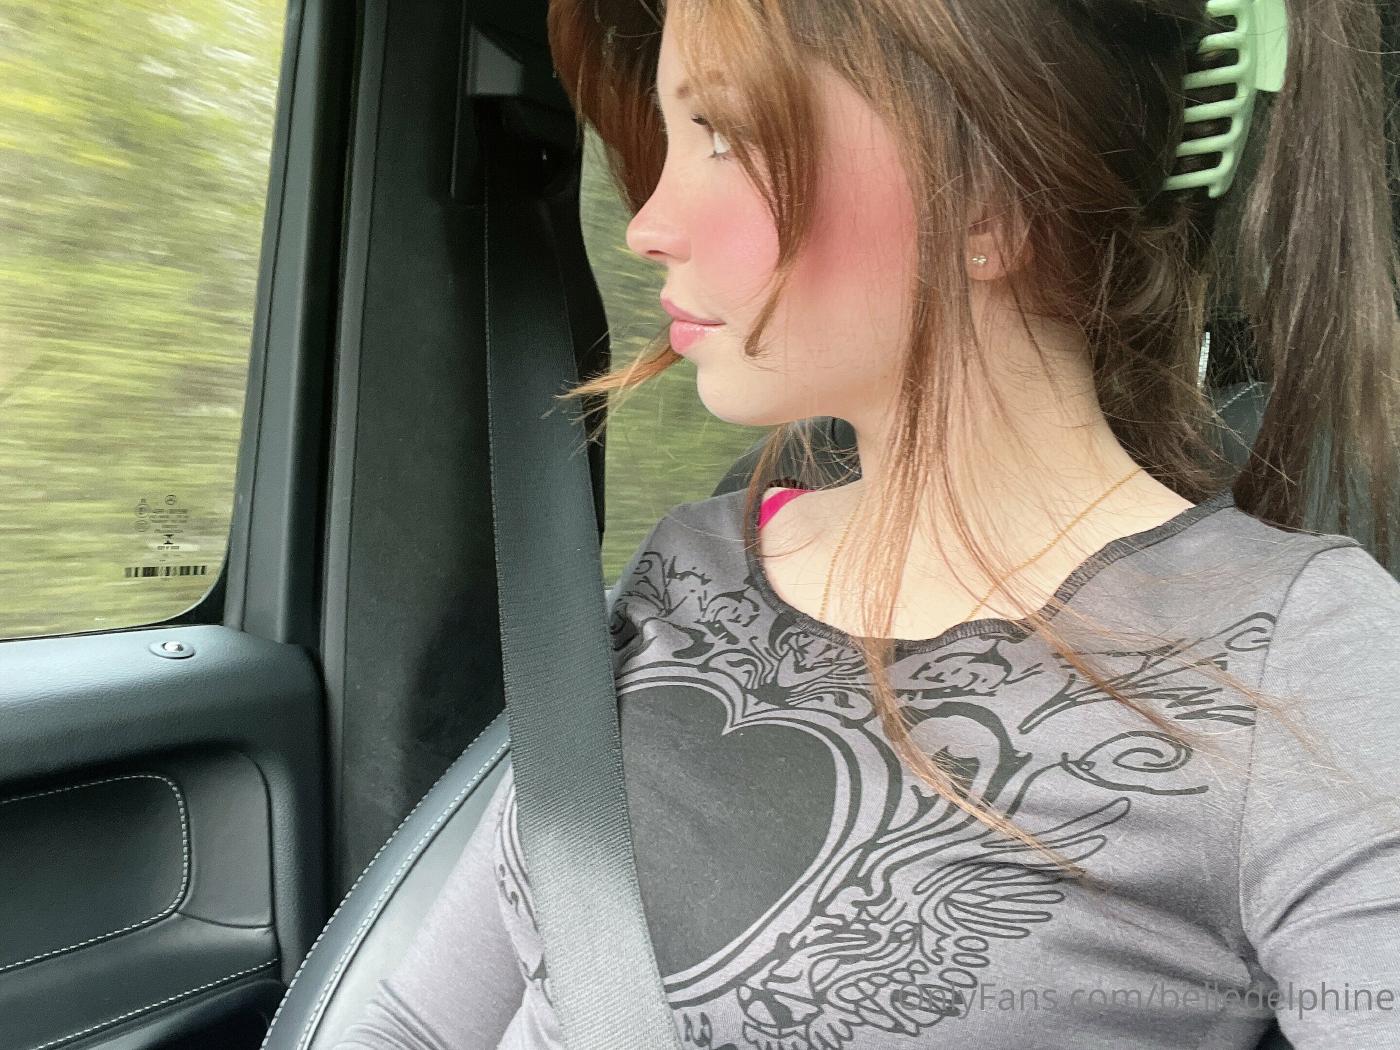 Belle Delphine Car Candid Selfies Onlyfans Set Leaked Vgiytq